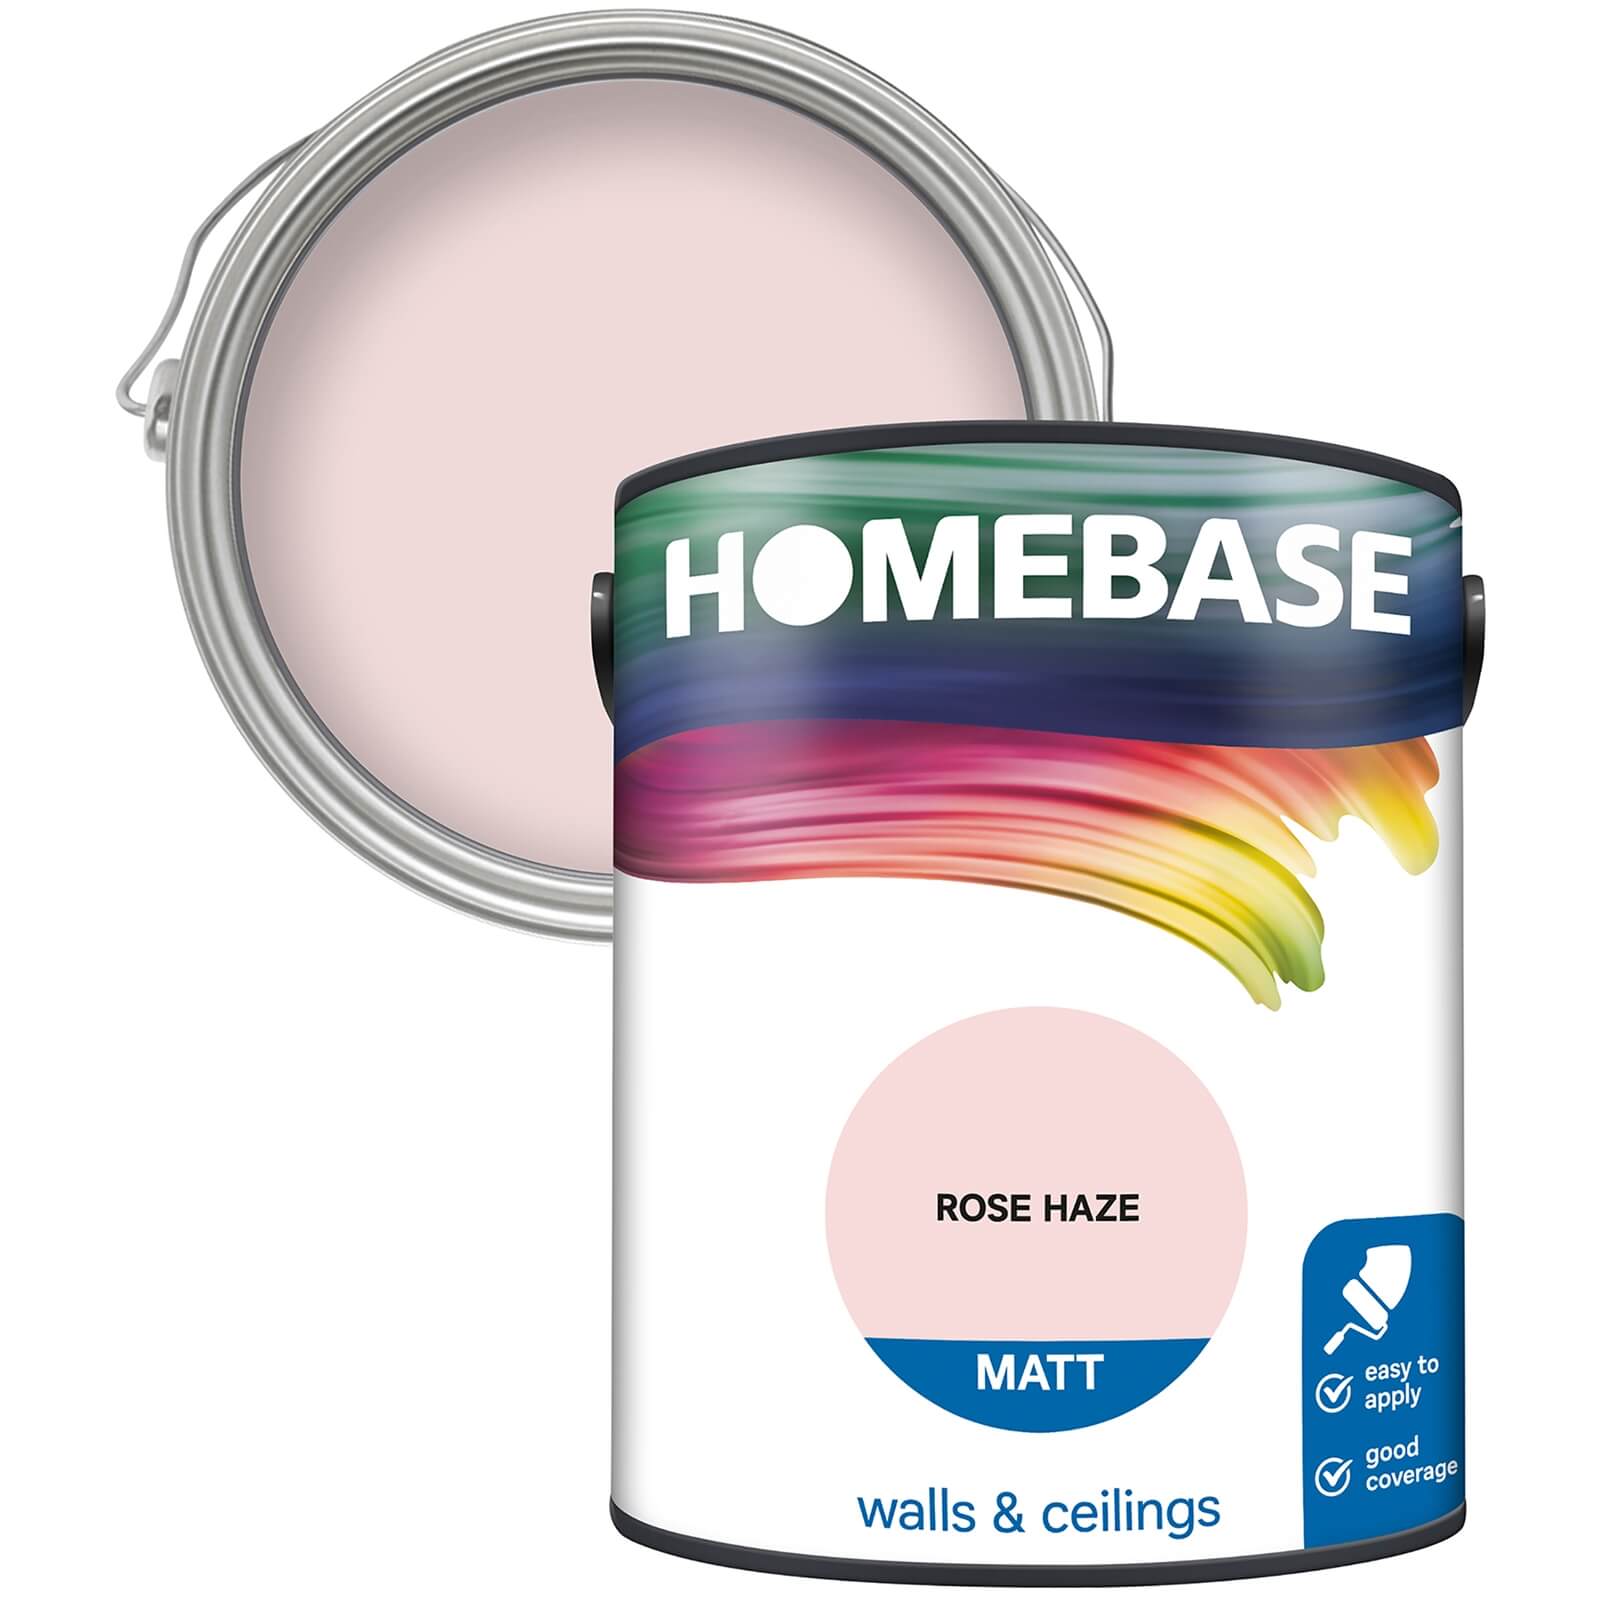 Homebase Matt Emulsion Paint Rose Haze - 5L